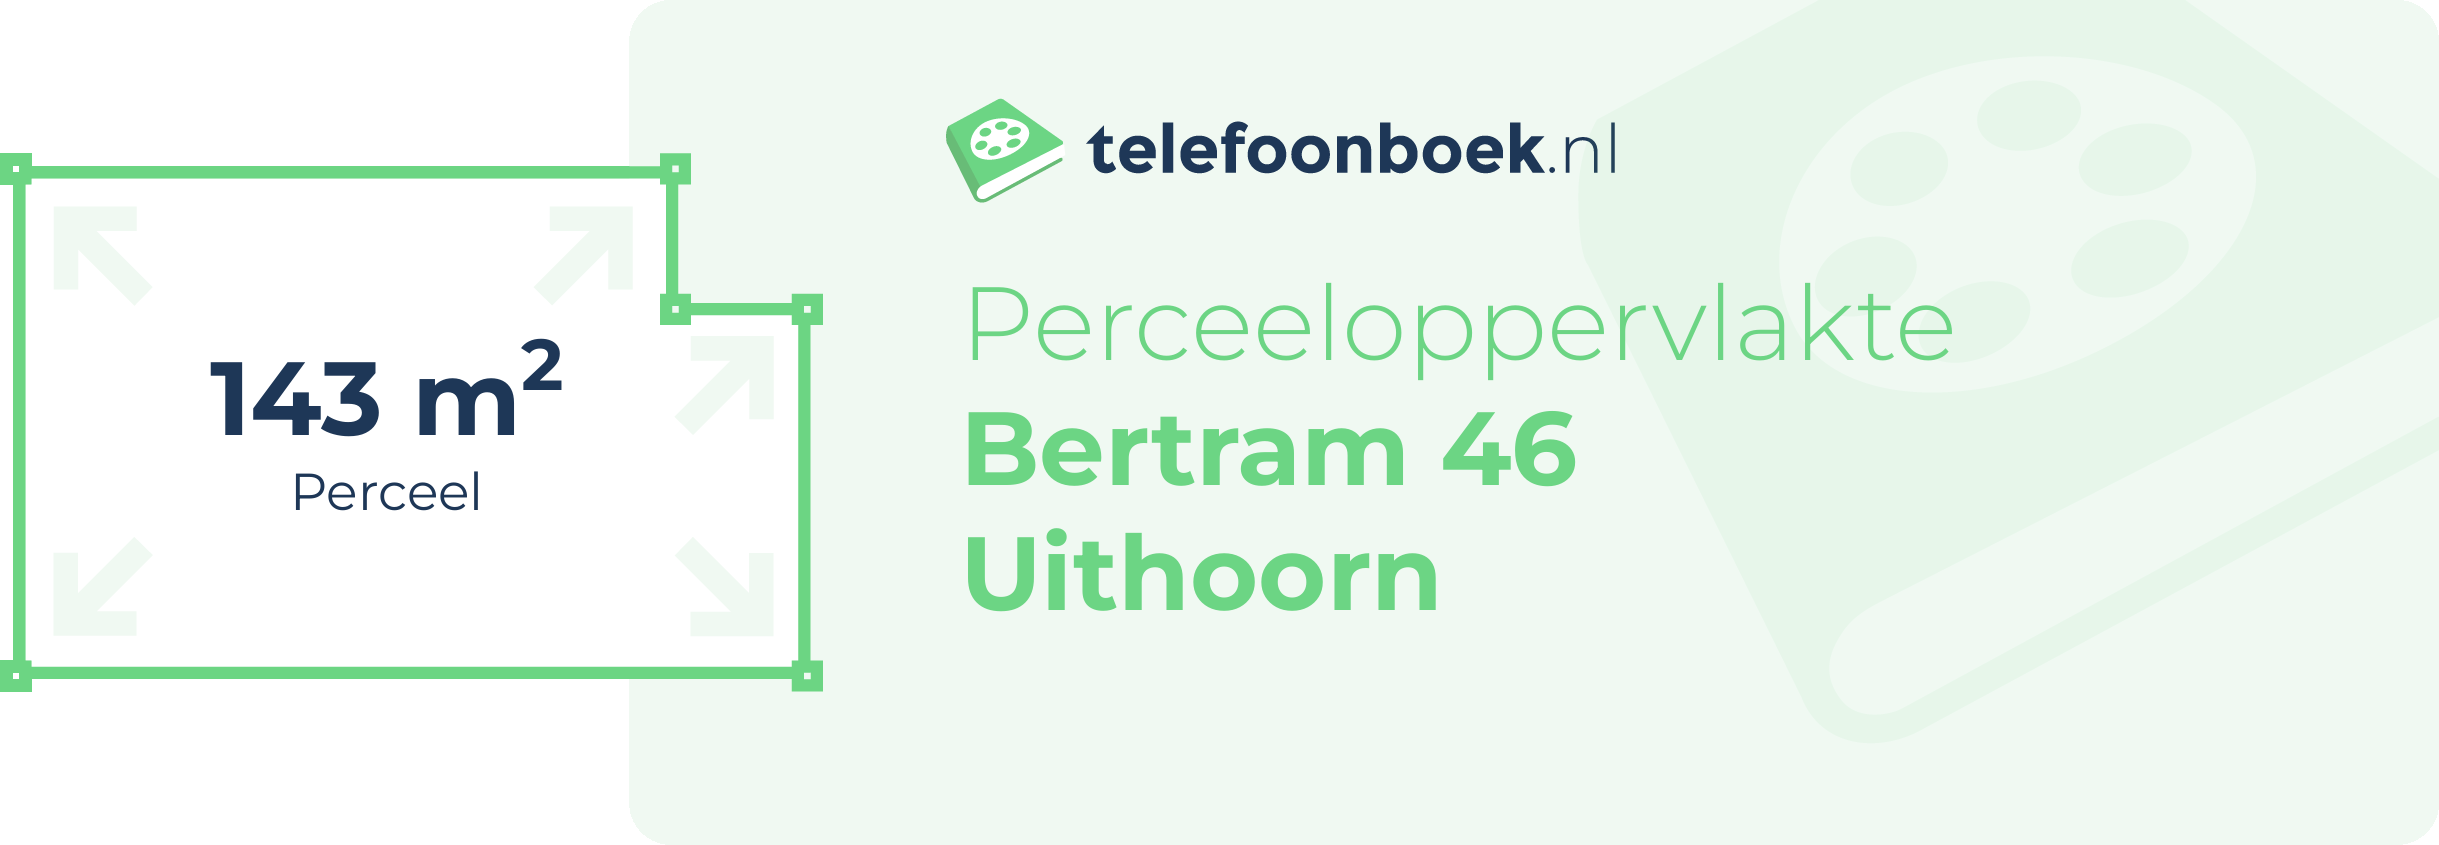 Perceeloppervlakte Bertram 46 Uithoorn